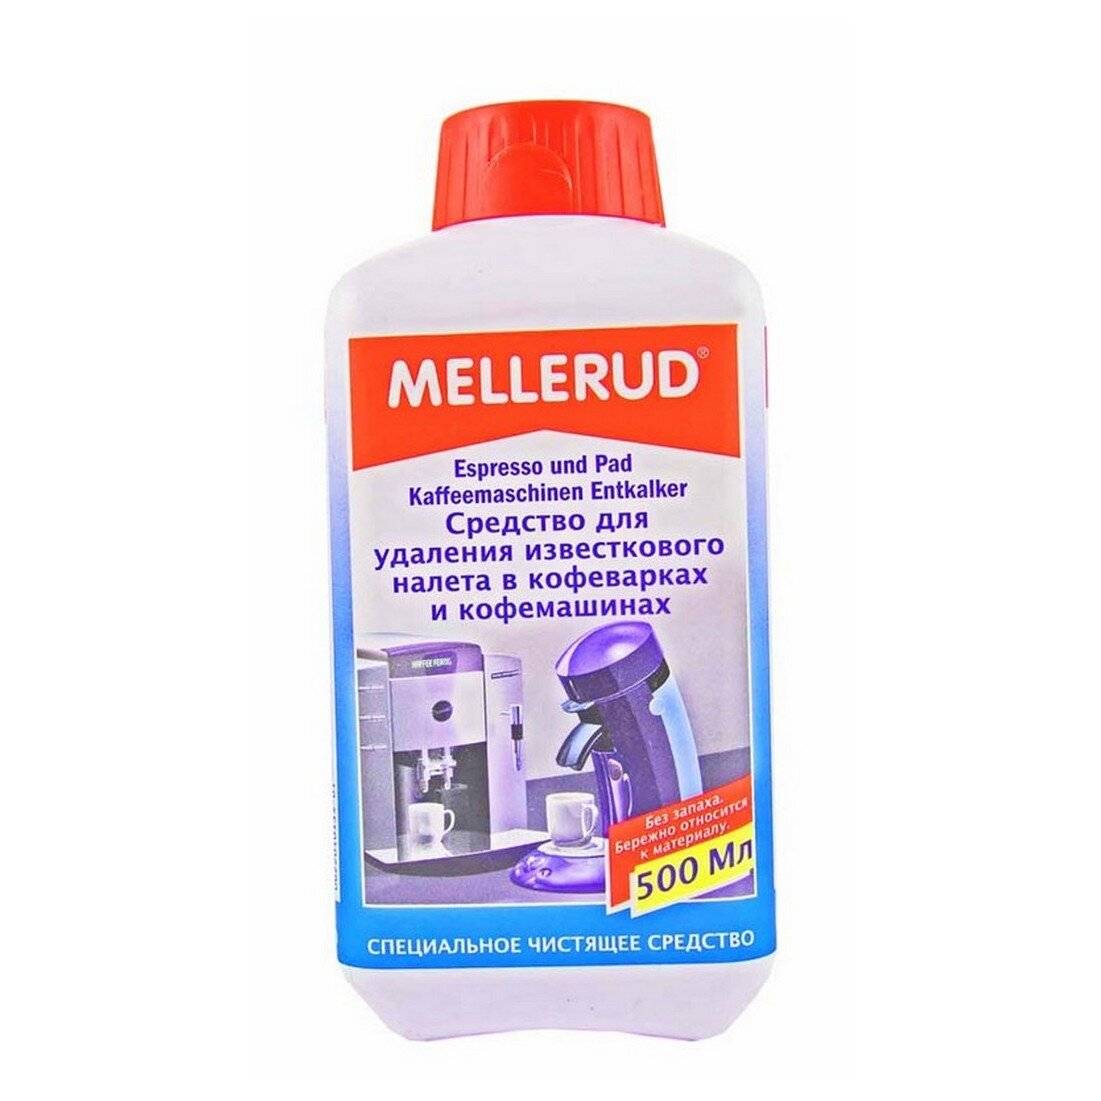 Эффективное средство от мочевого камня. Mellerud чистящее средство для душевых кабин 0,5 л. Чистящее средство для пластиковых изделий Mellerud. Средство для чистки туалета Mellerud, 1л. Средство для очистки от плесени Mellerud, 500мл.